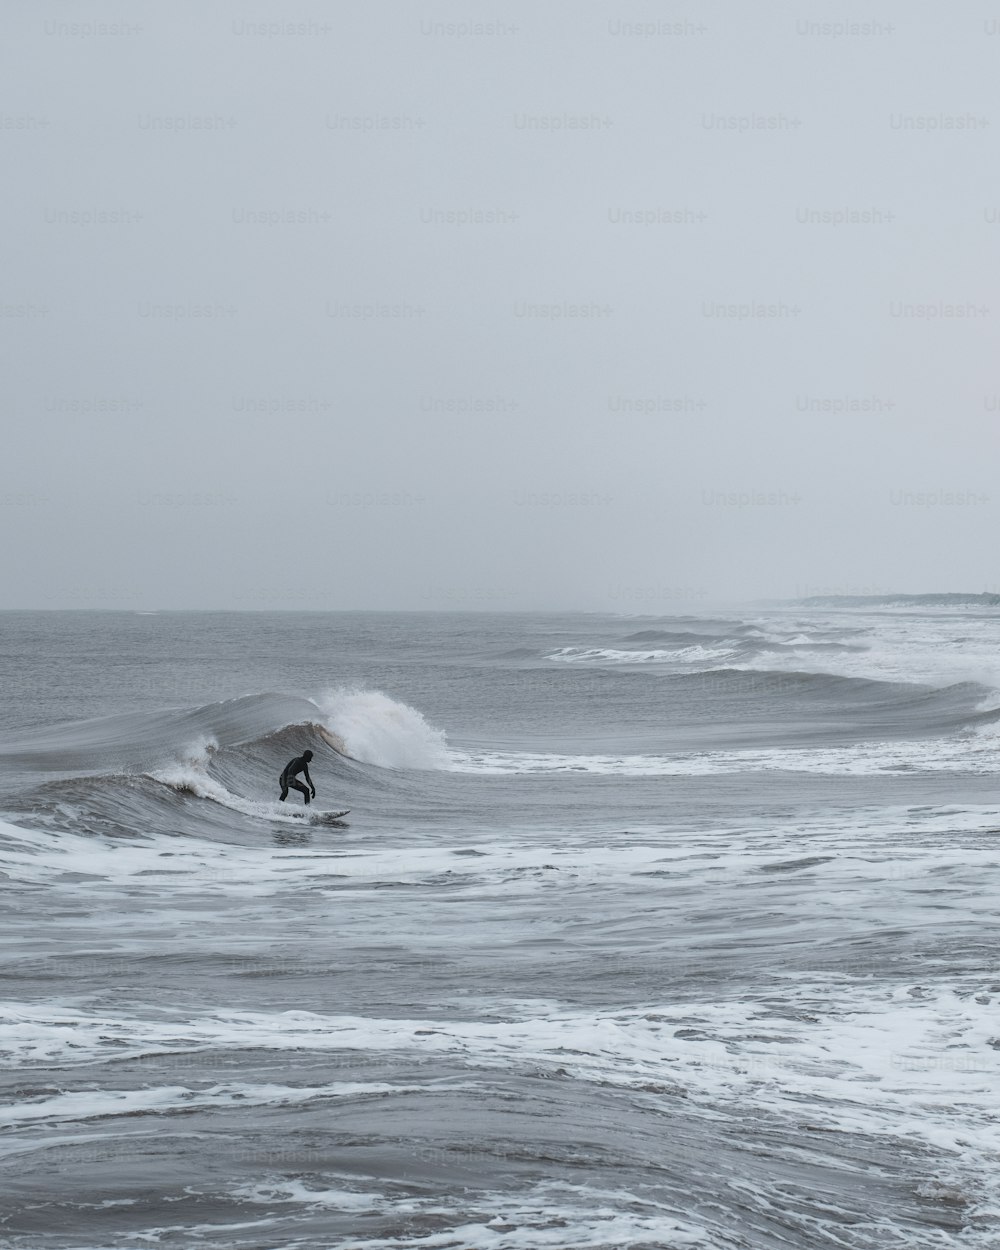 Un hombre montando una ola encima de una tabla de surf